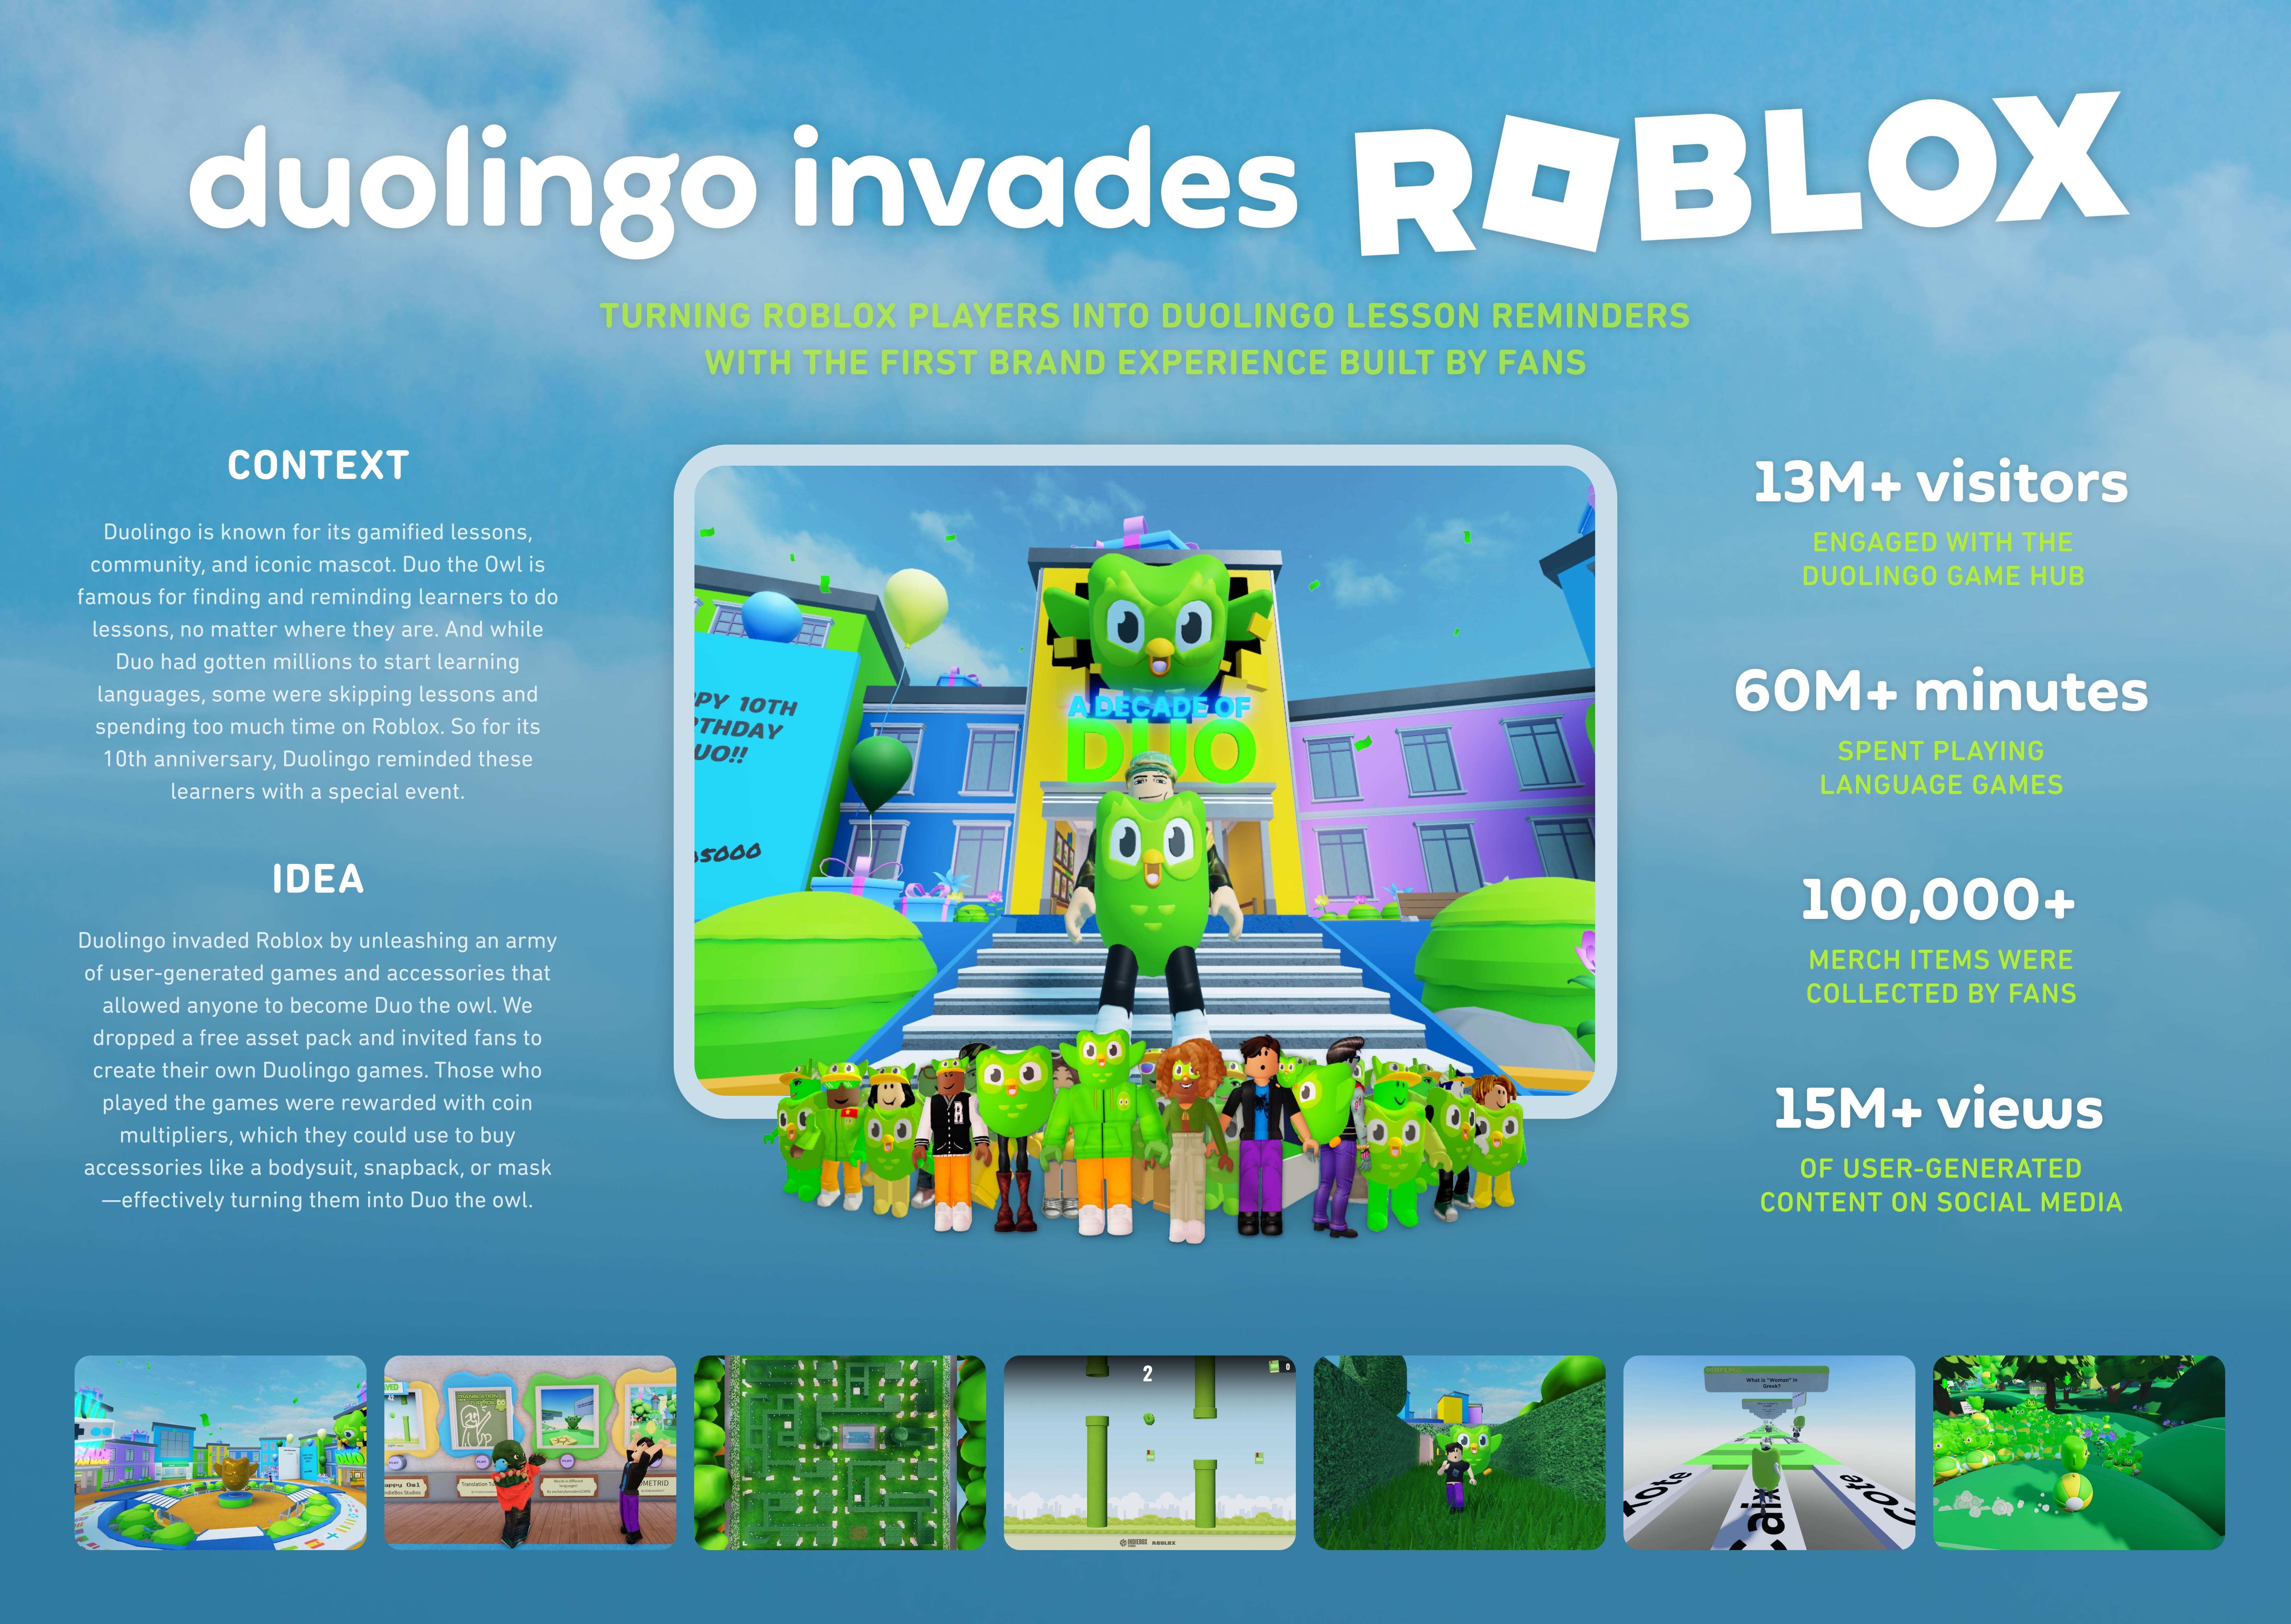 DUOLINGO INVADES ROBLOX